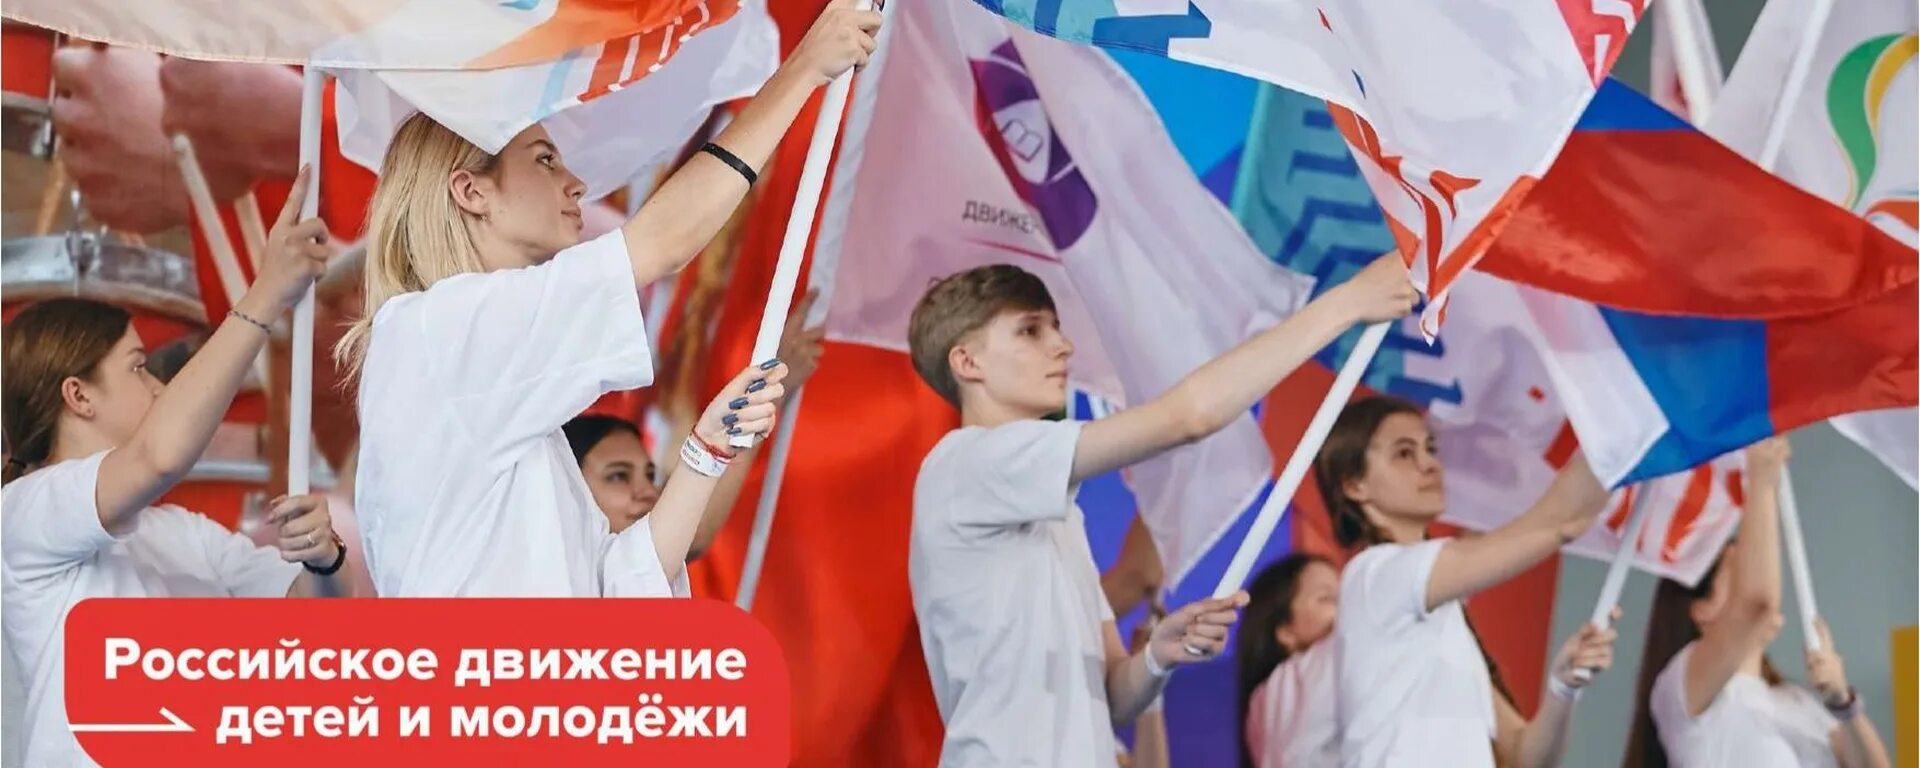 Российское движение детей и молодежи. Рддм российское движение первых. Детские и молодежные движения. Детское и молодежное движение это.